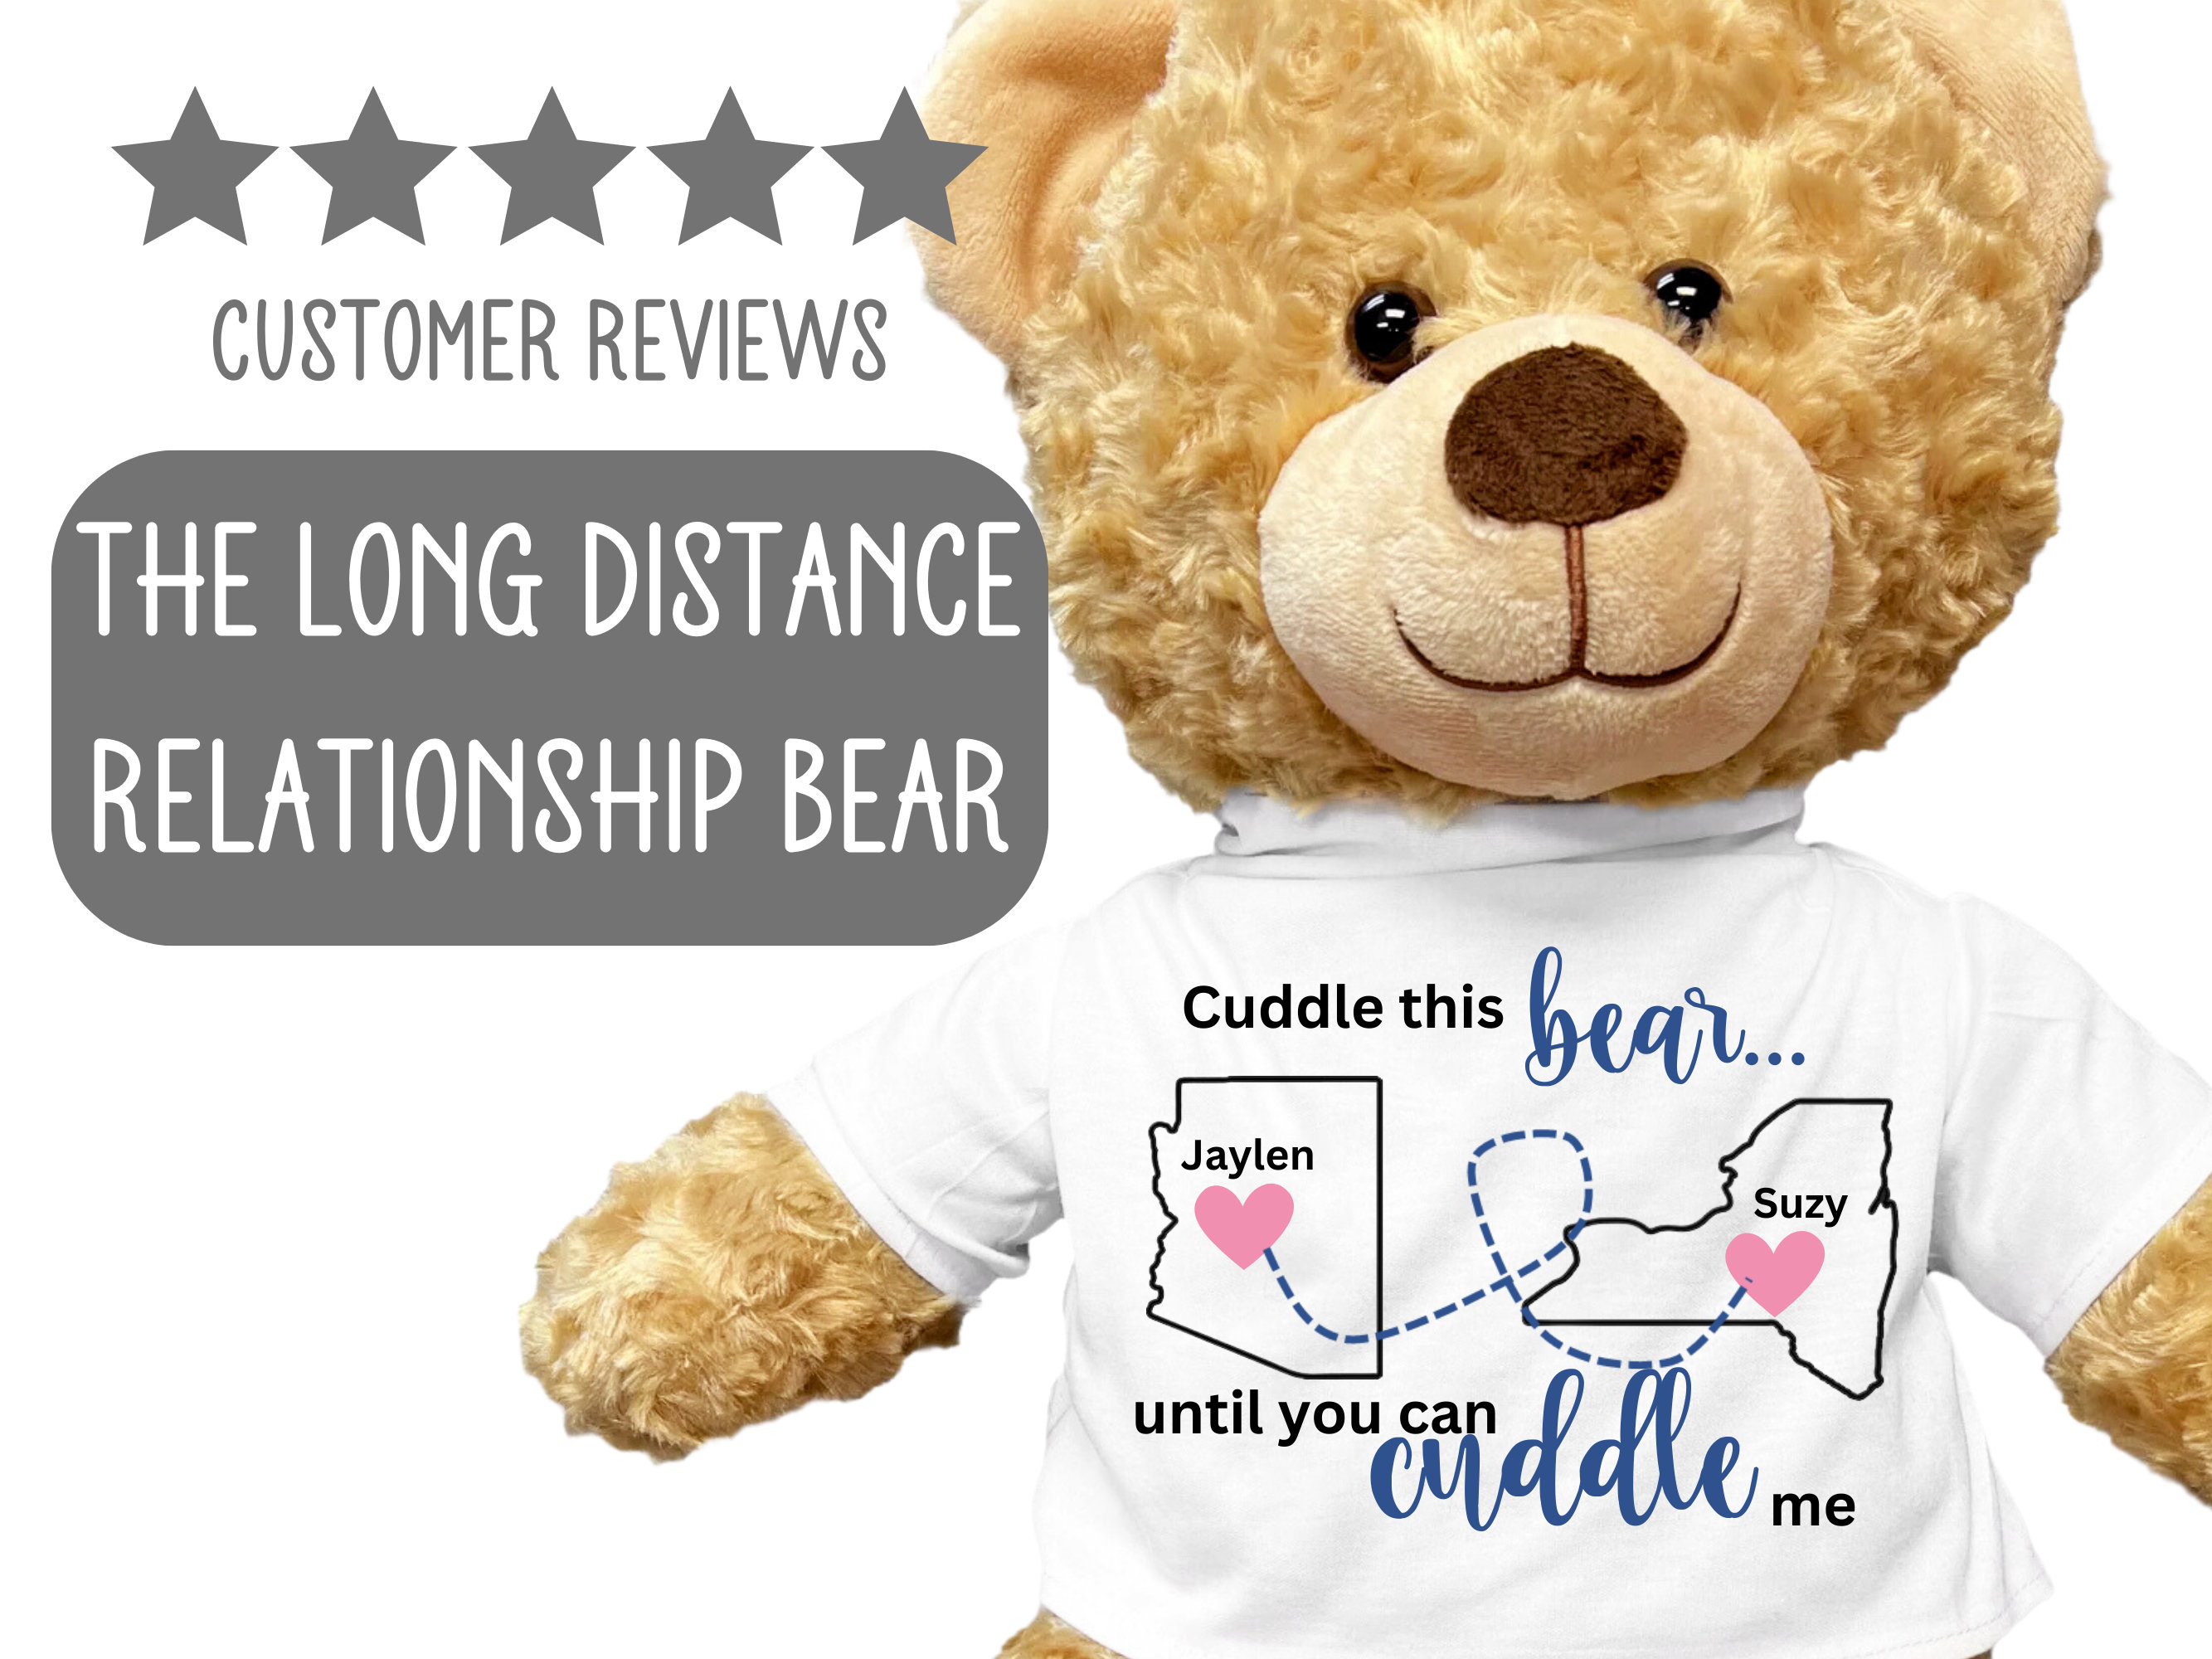 Funny Boyfriend Gifts, Things to Get Your Boyfriend, Teddy Bear